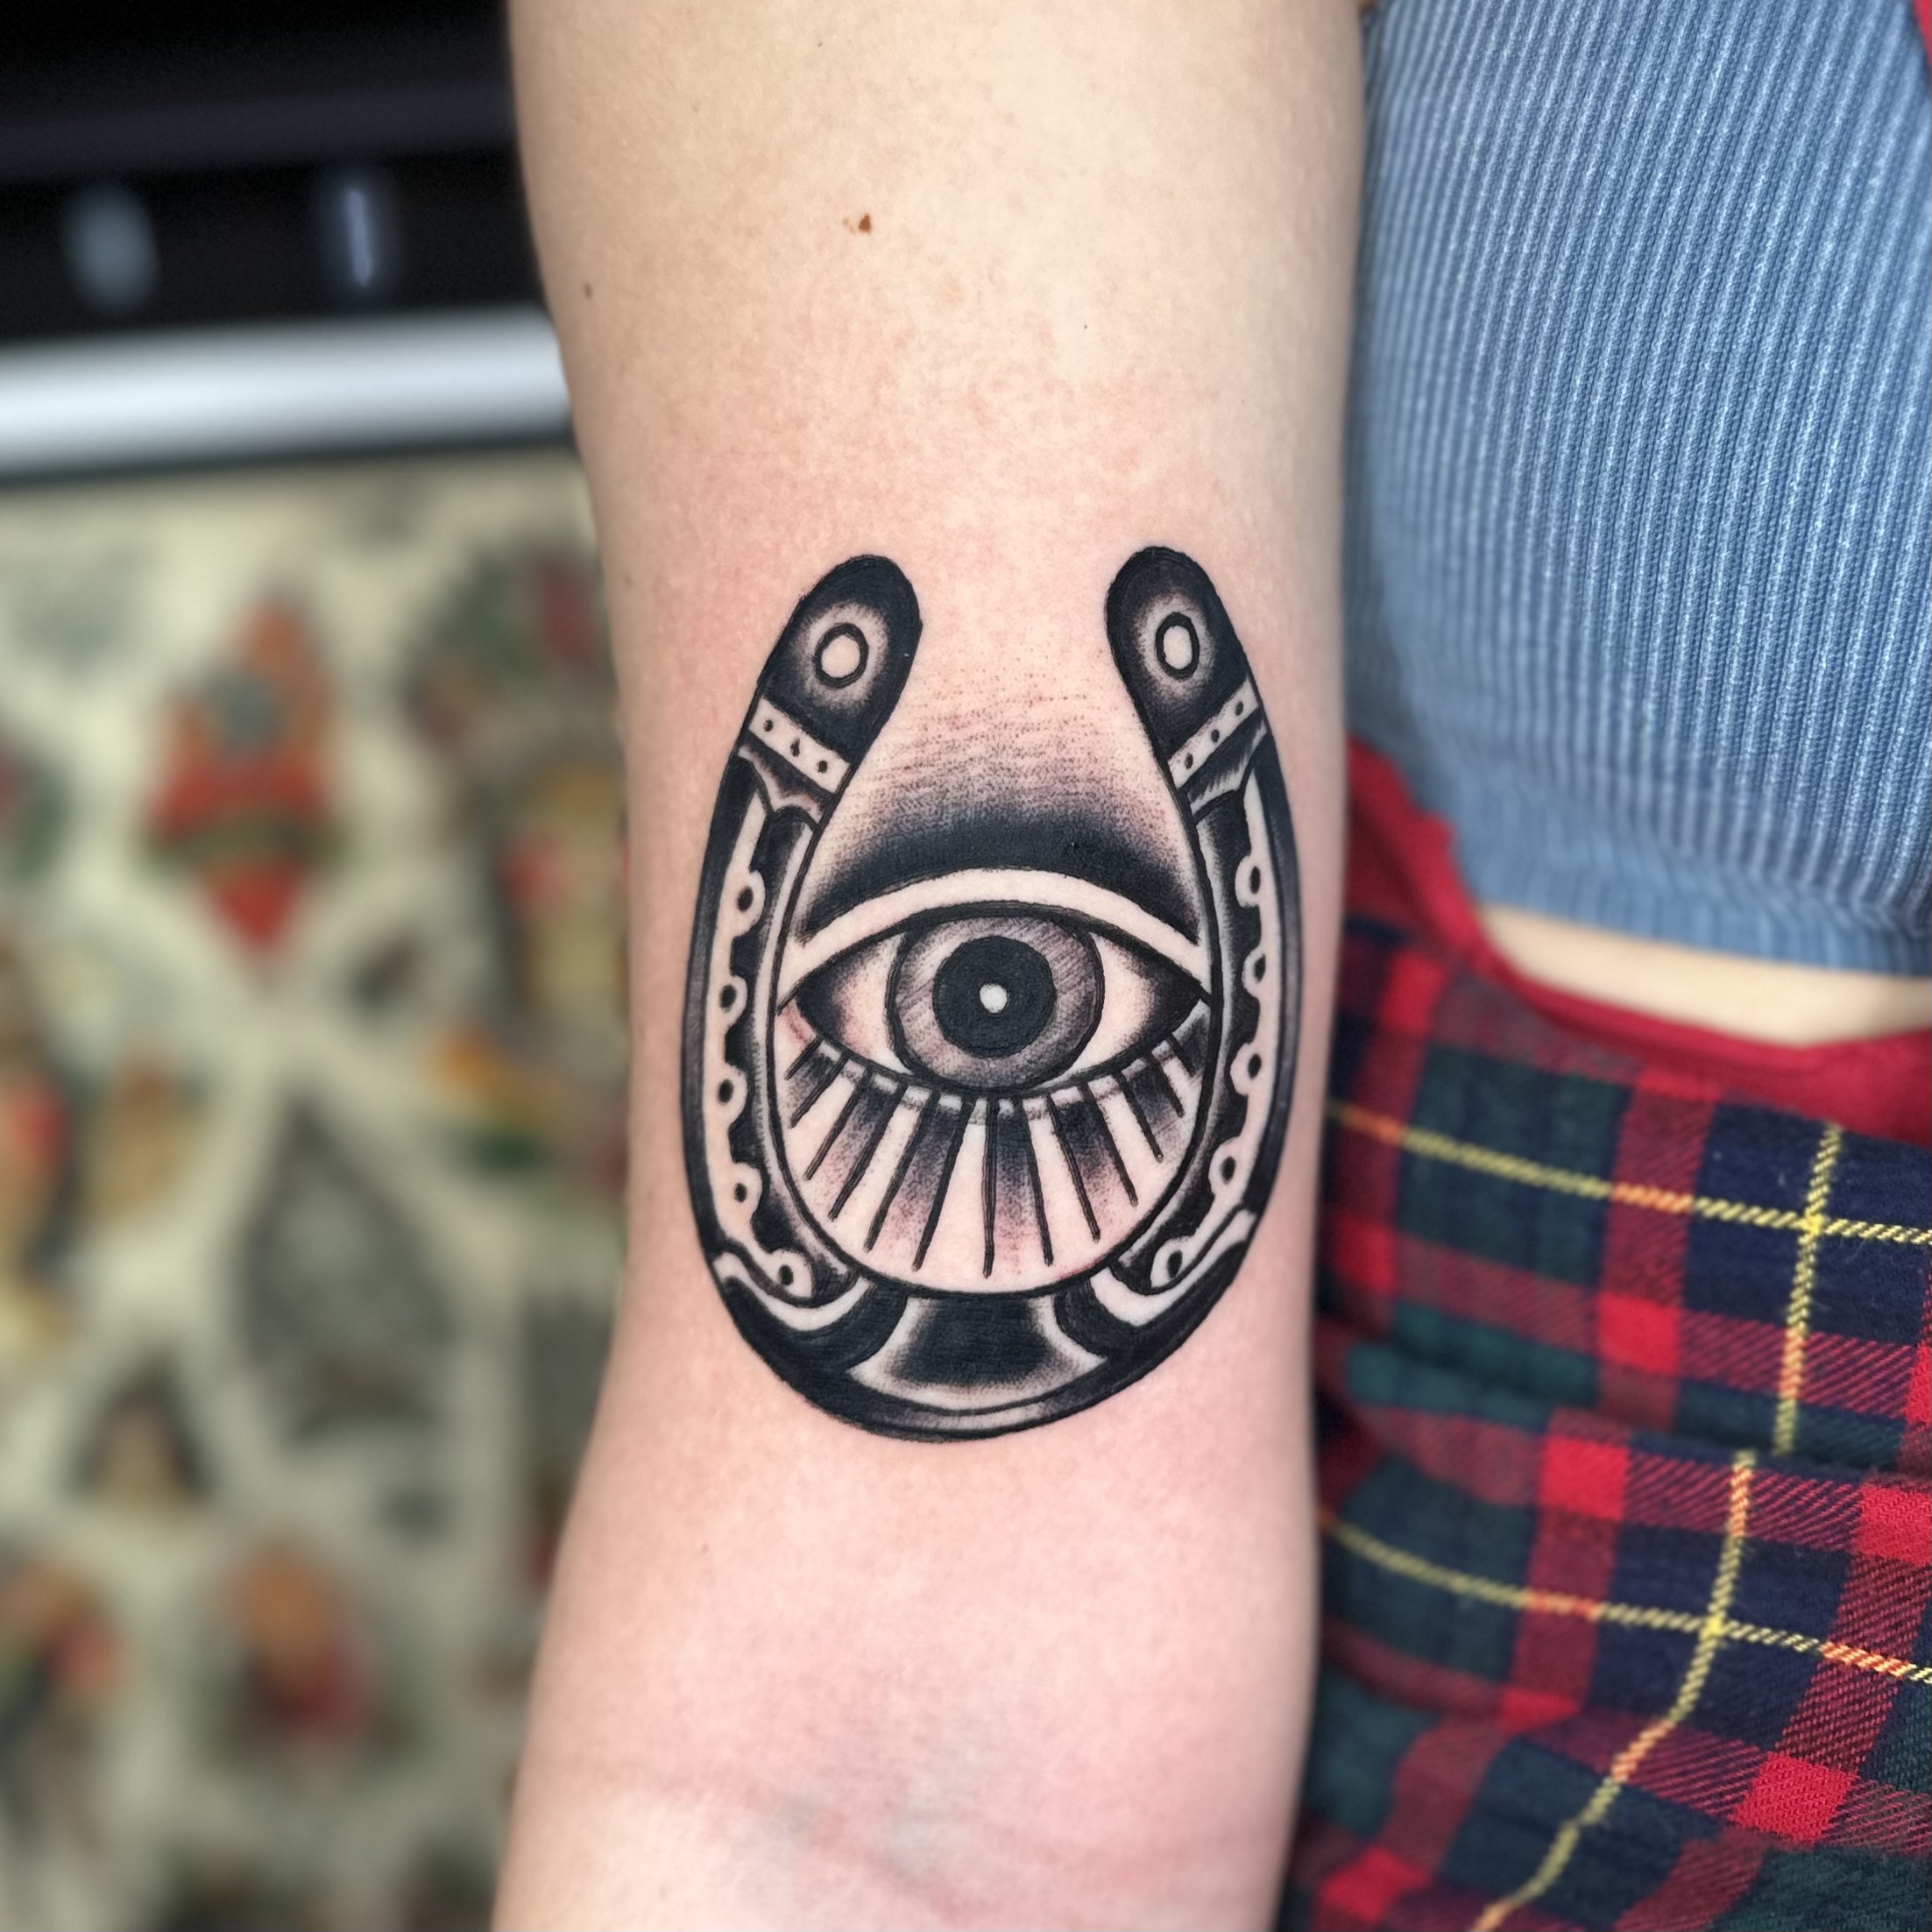 tattoo of a horseshoe and an eye